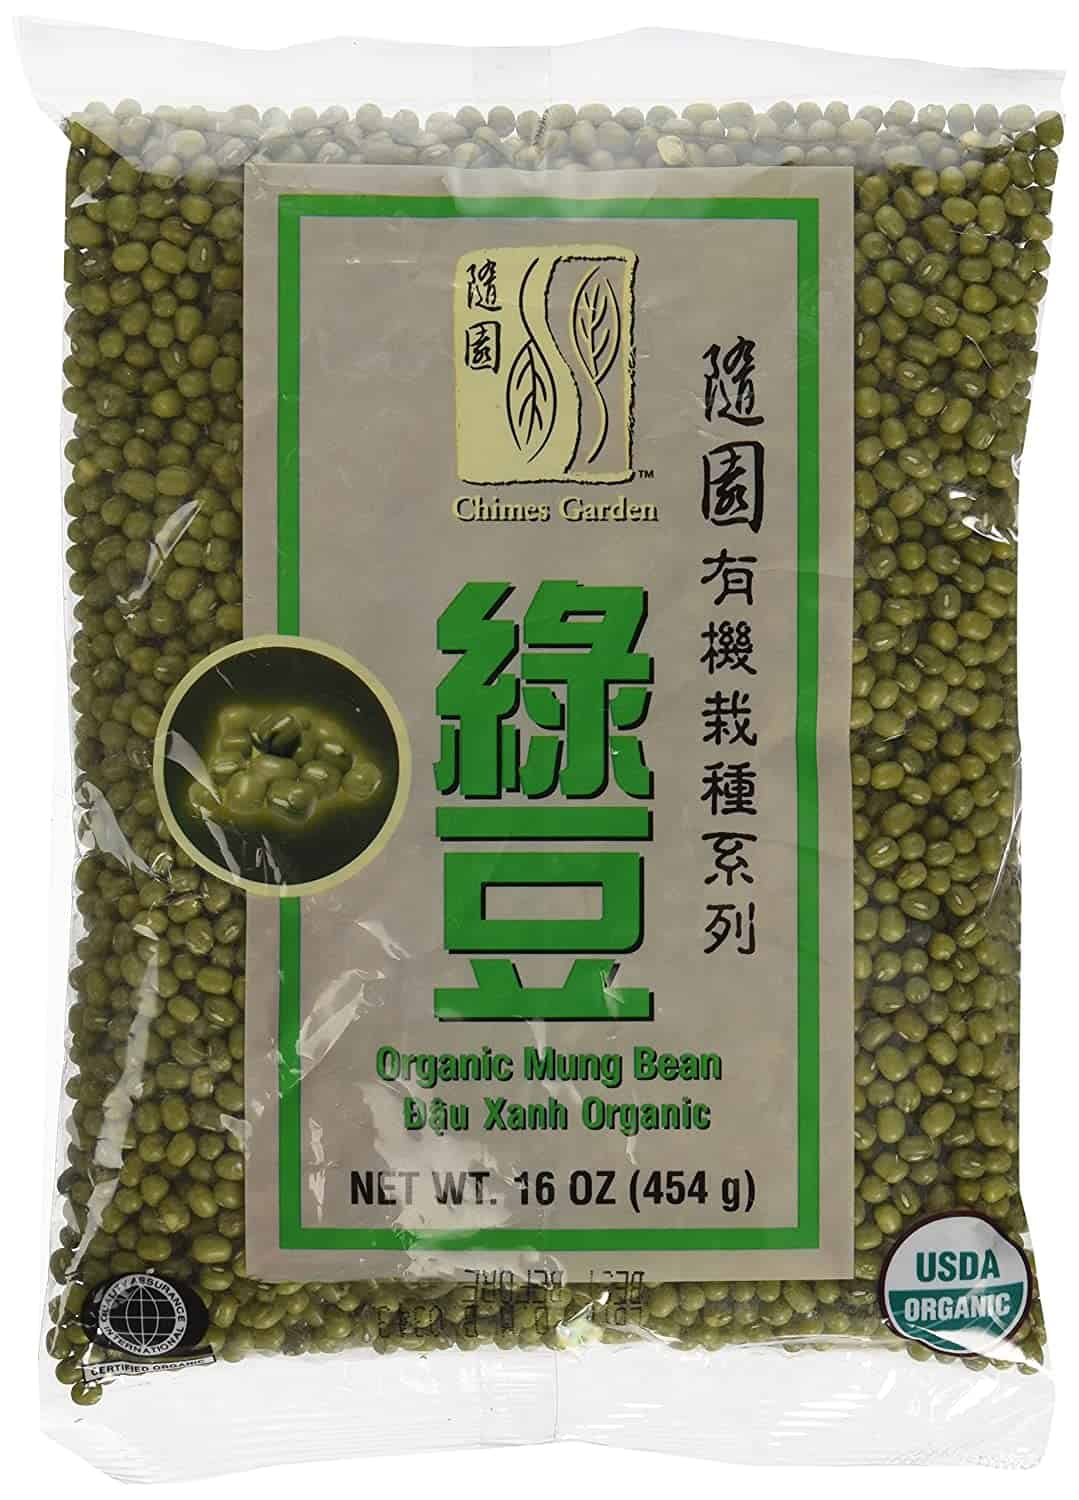 ถั่วเขียวโดยรวมที่ดีที่สุด: Chimes Garden Organic Mung Beans